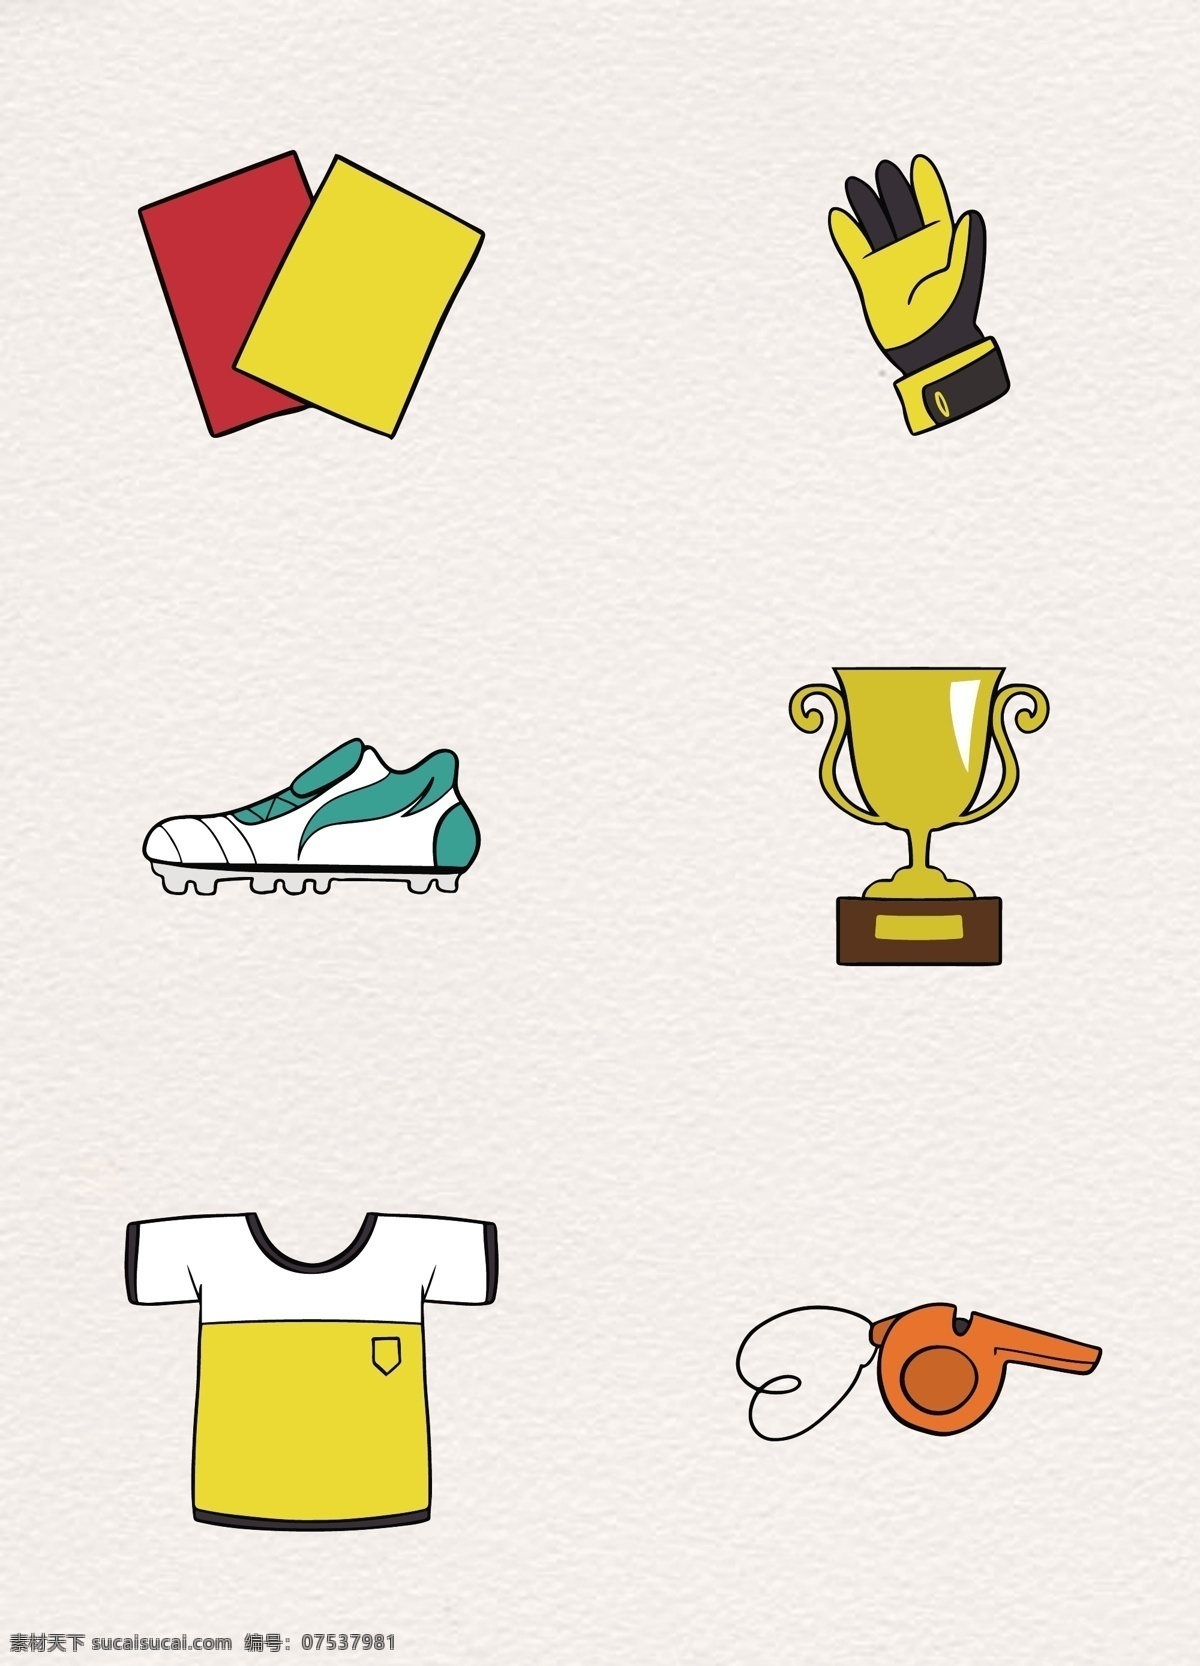 彩色 手绘 足球比赛 图标 足球 矢量 扁平化 足球图标 足球比赛图标 红牌黄牌 哨子